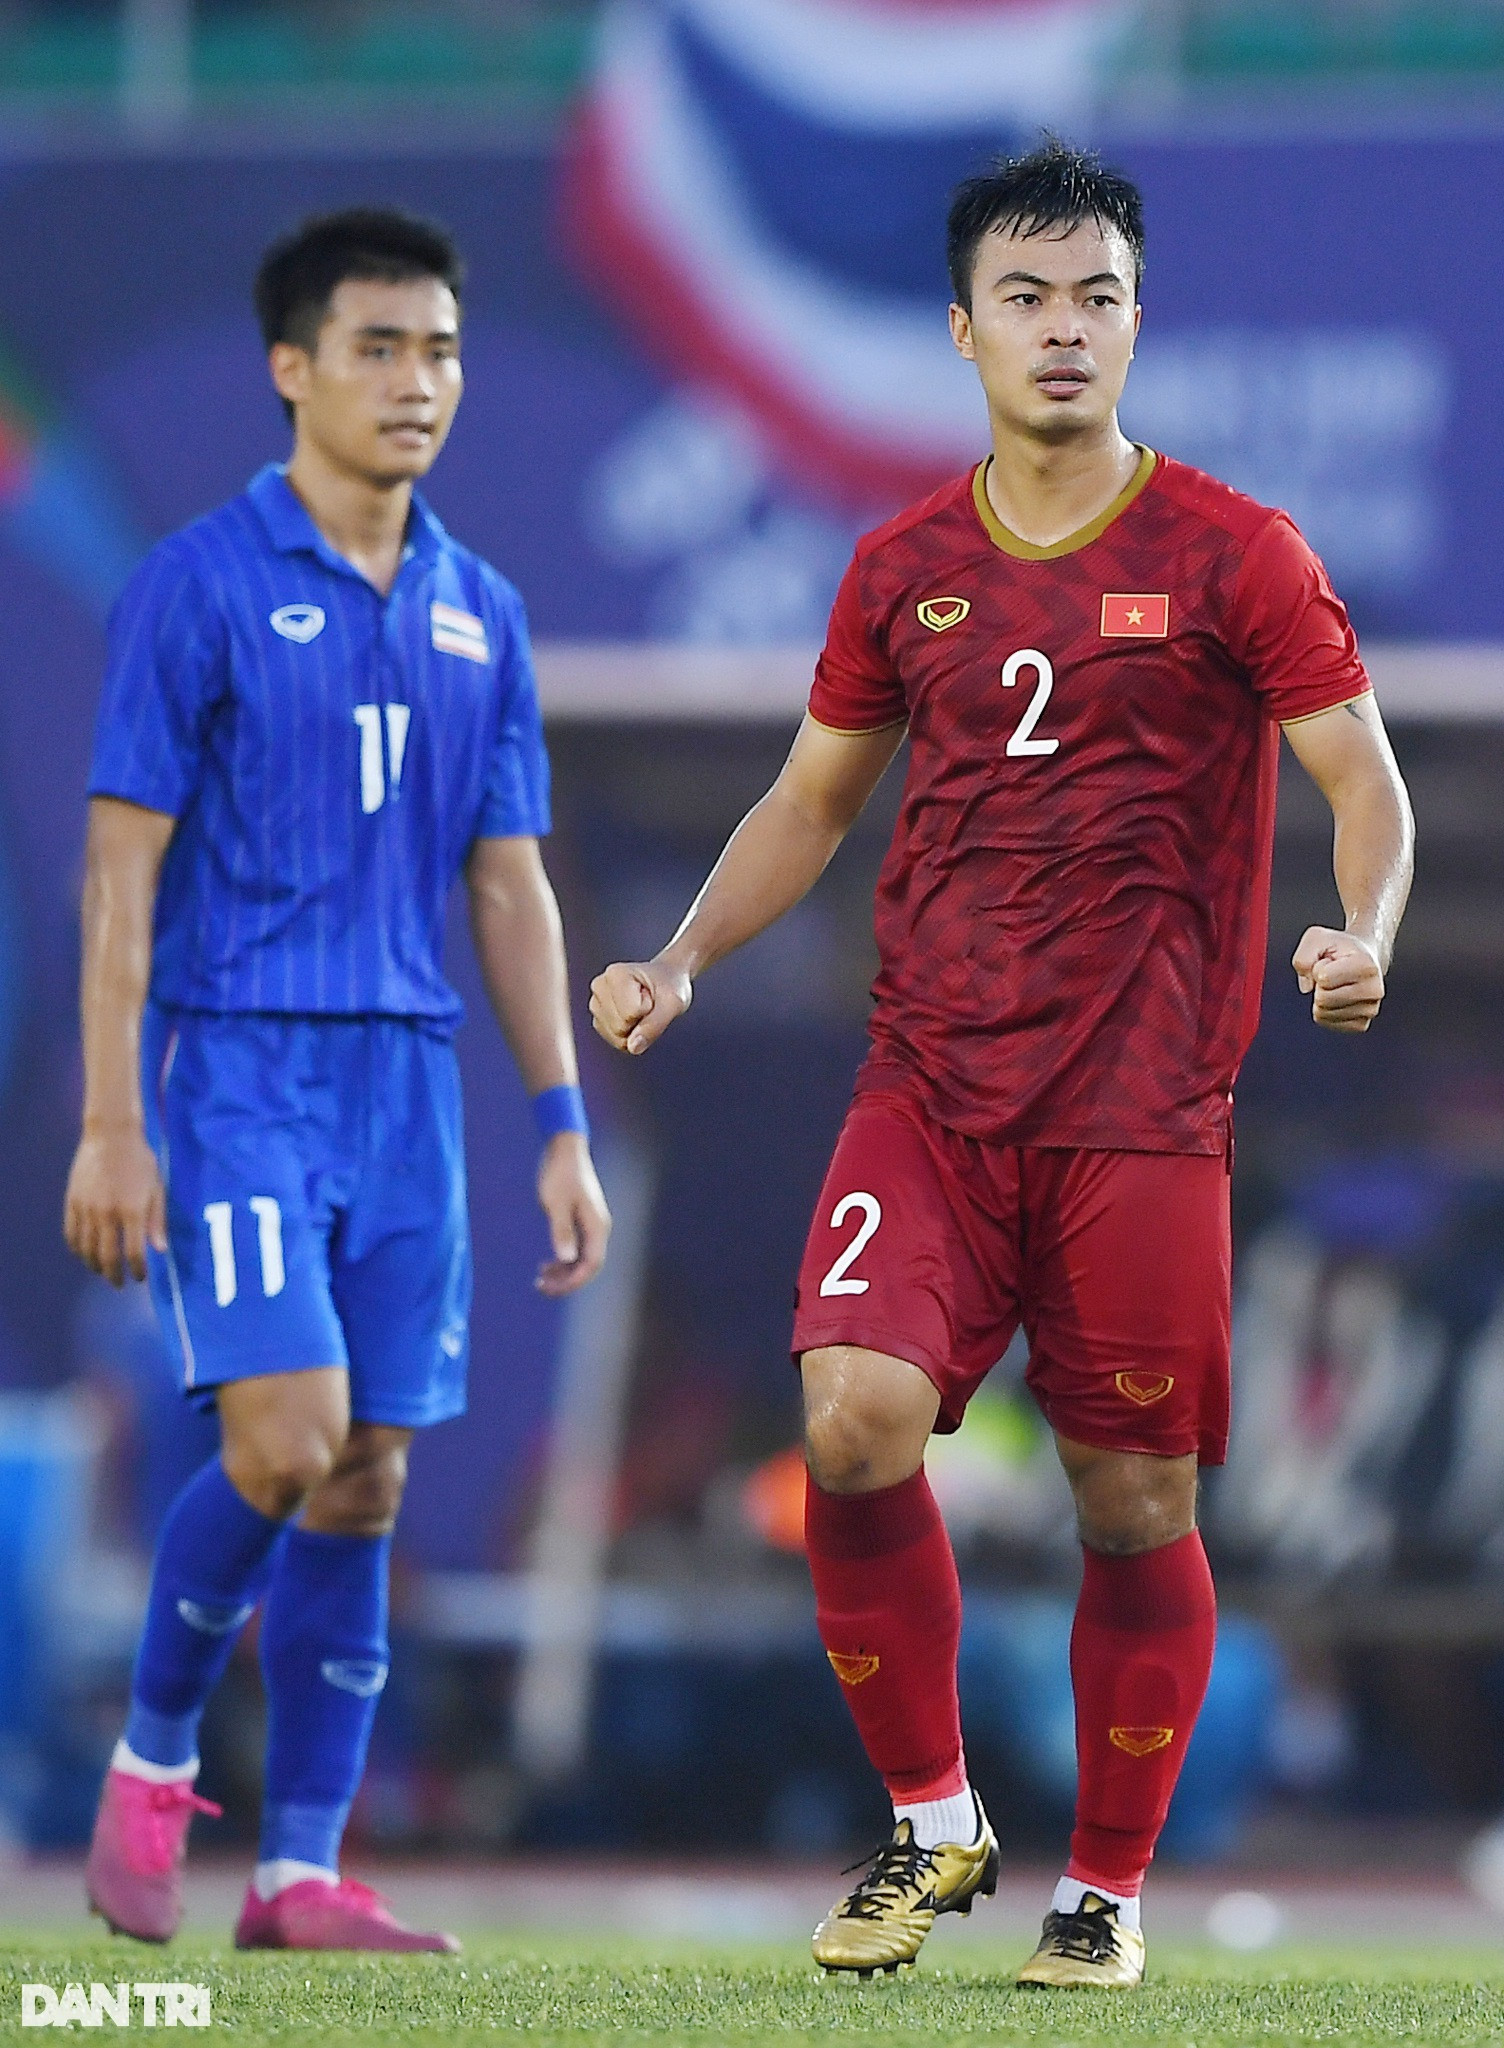 Năm Dần 2022 bàn về đội hình tuổi Hổ của bóng đá Việt Nam - 4